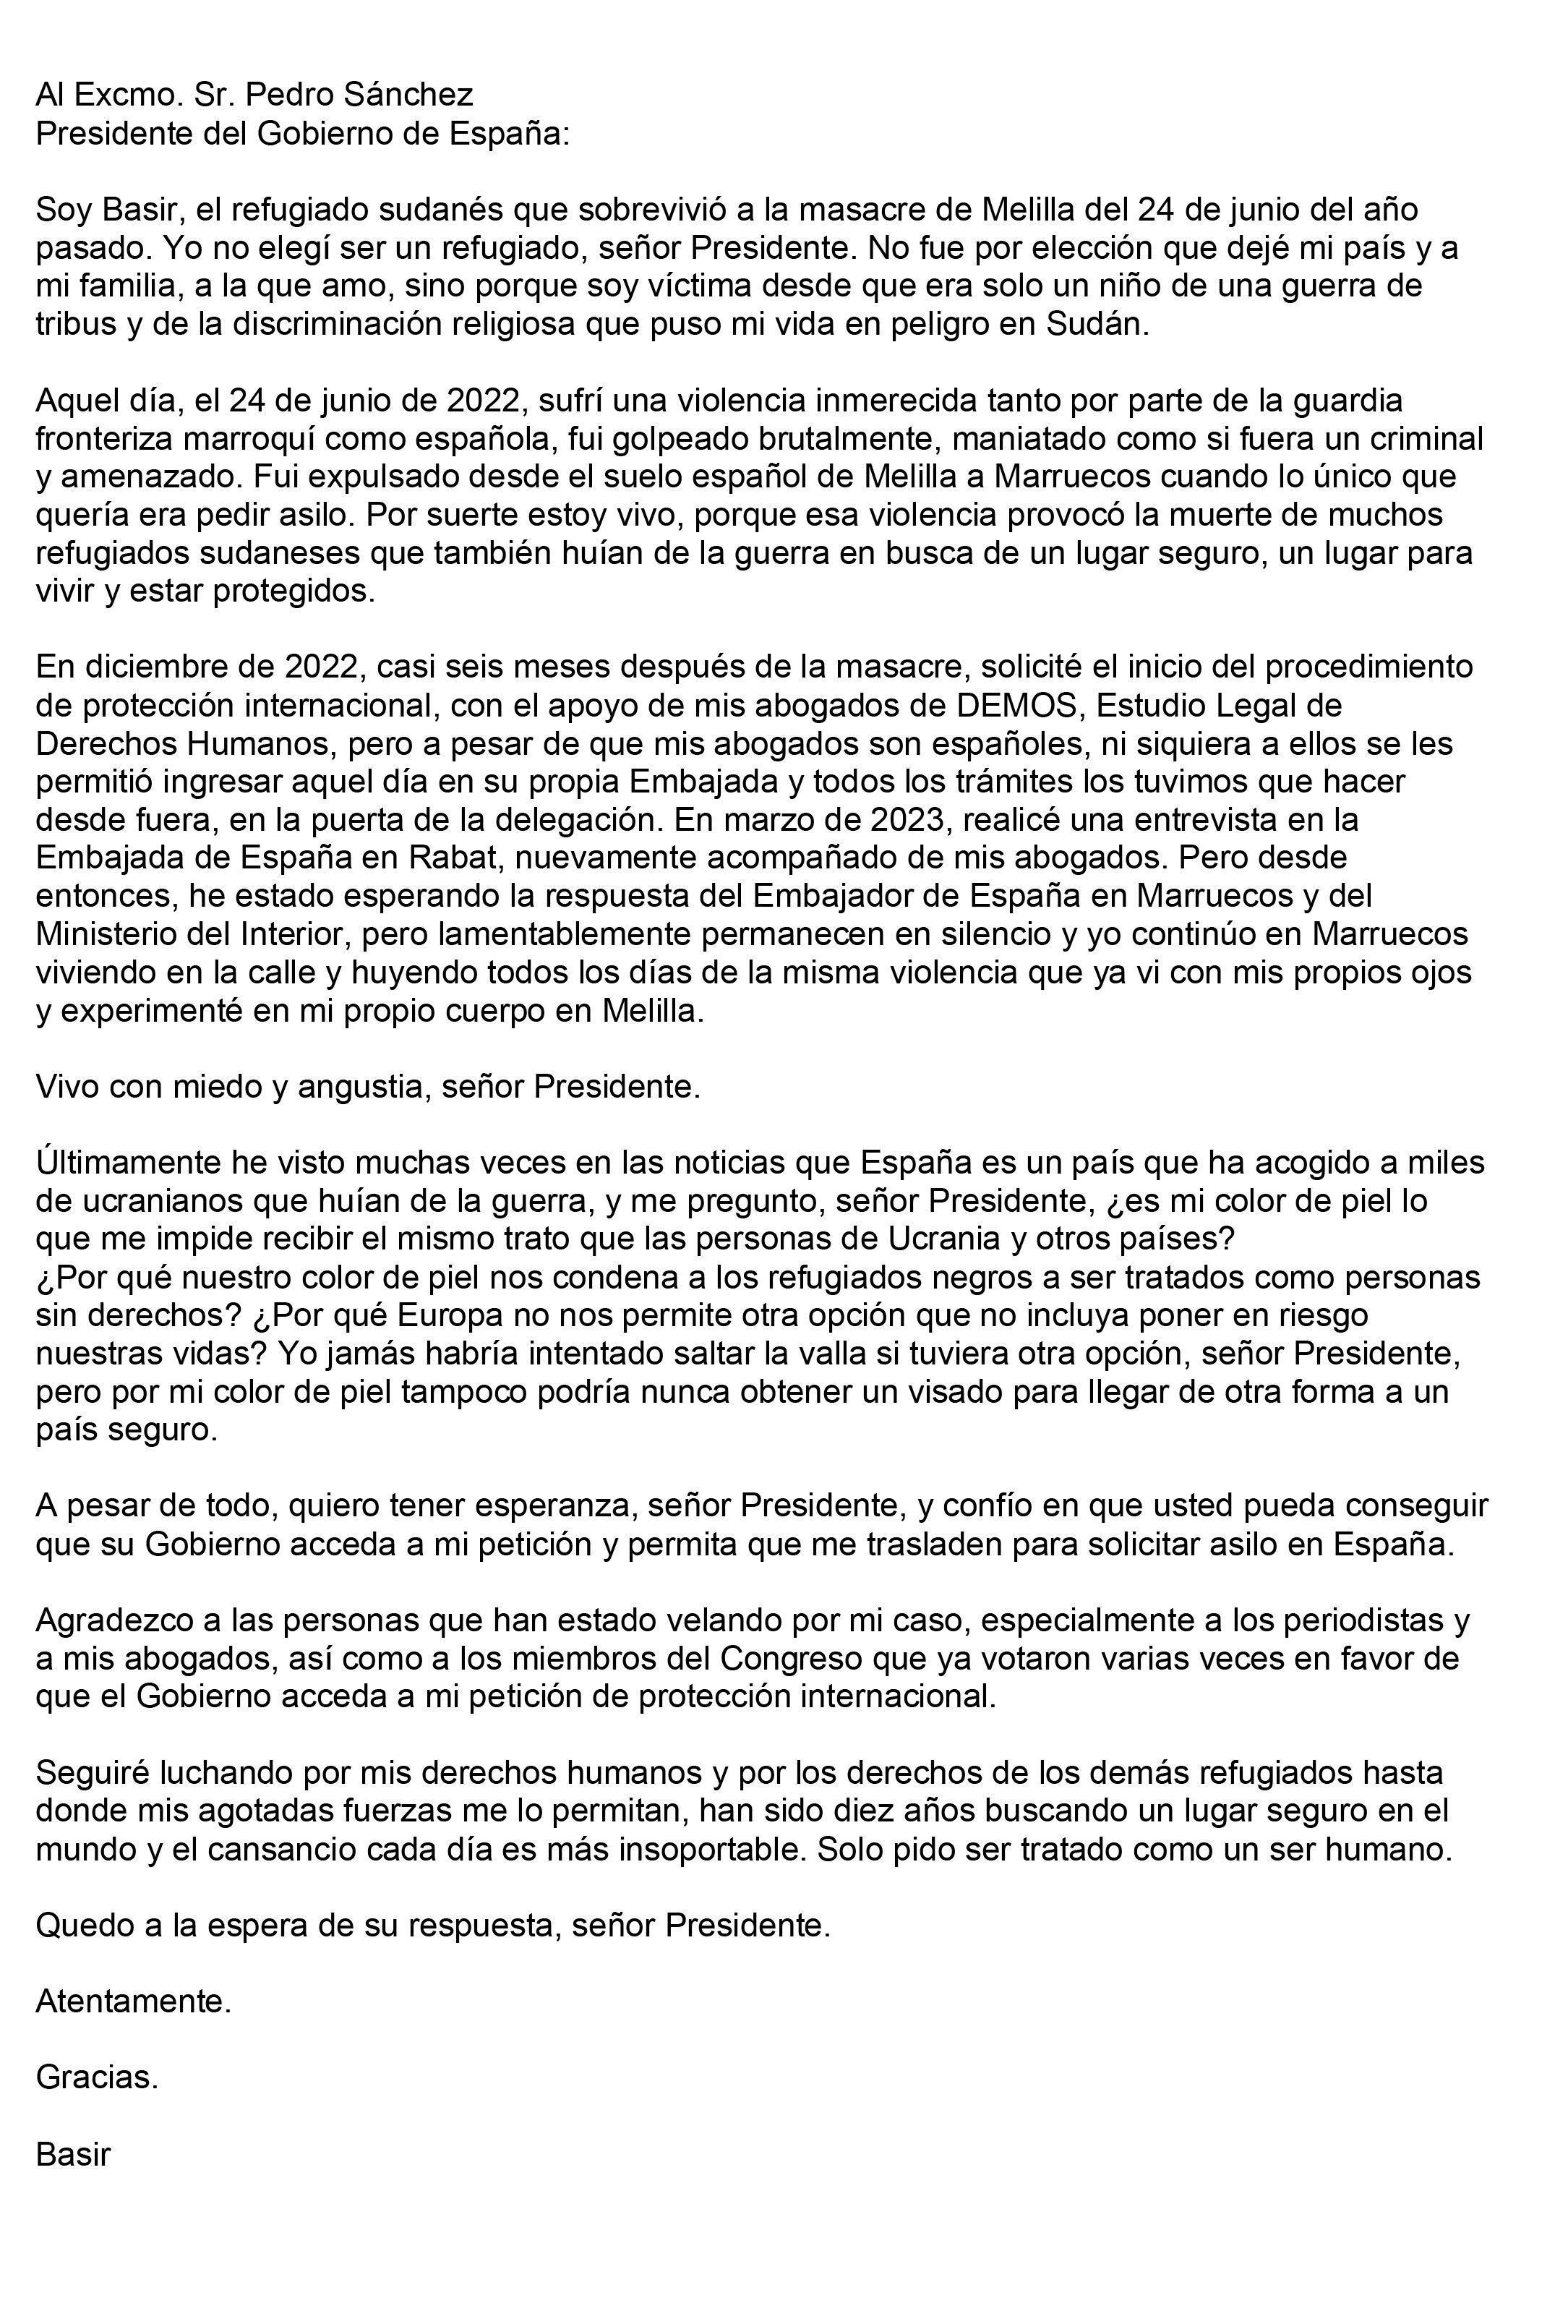 Traducción al español de la carta de Basir (nombre ficticio) al presidente del Gobierno, Pedro Sánchez. (Traducción: DEMOS).